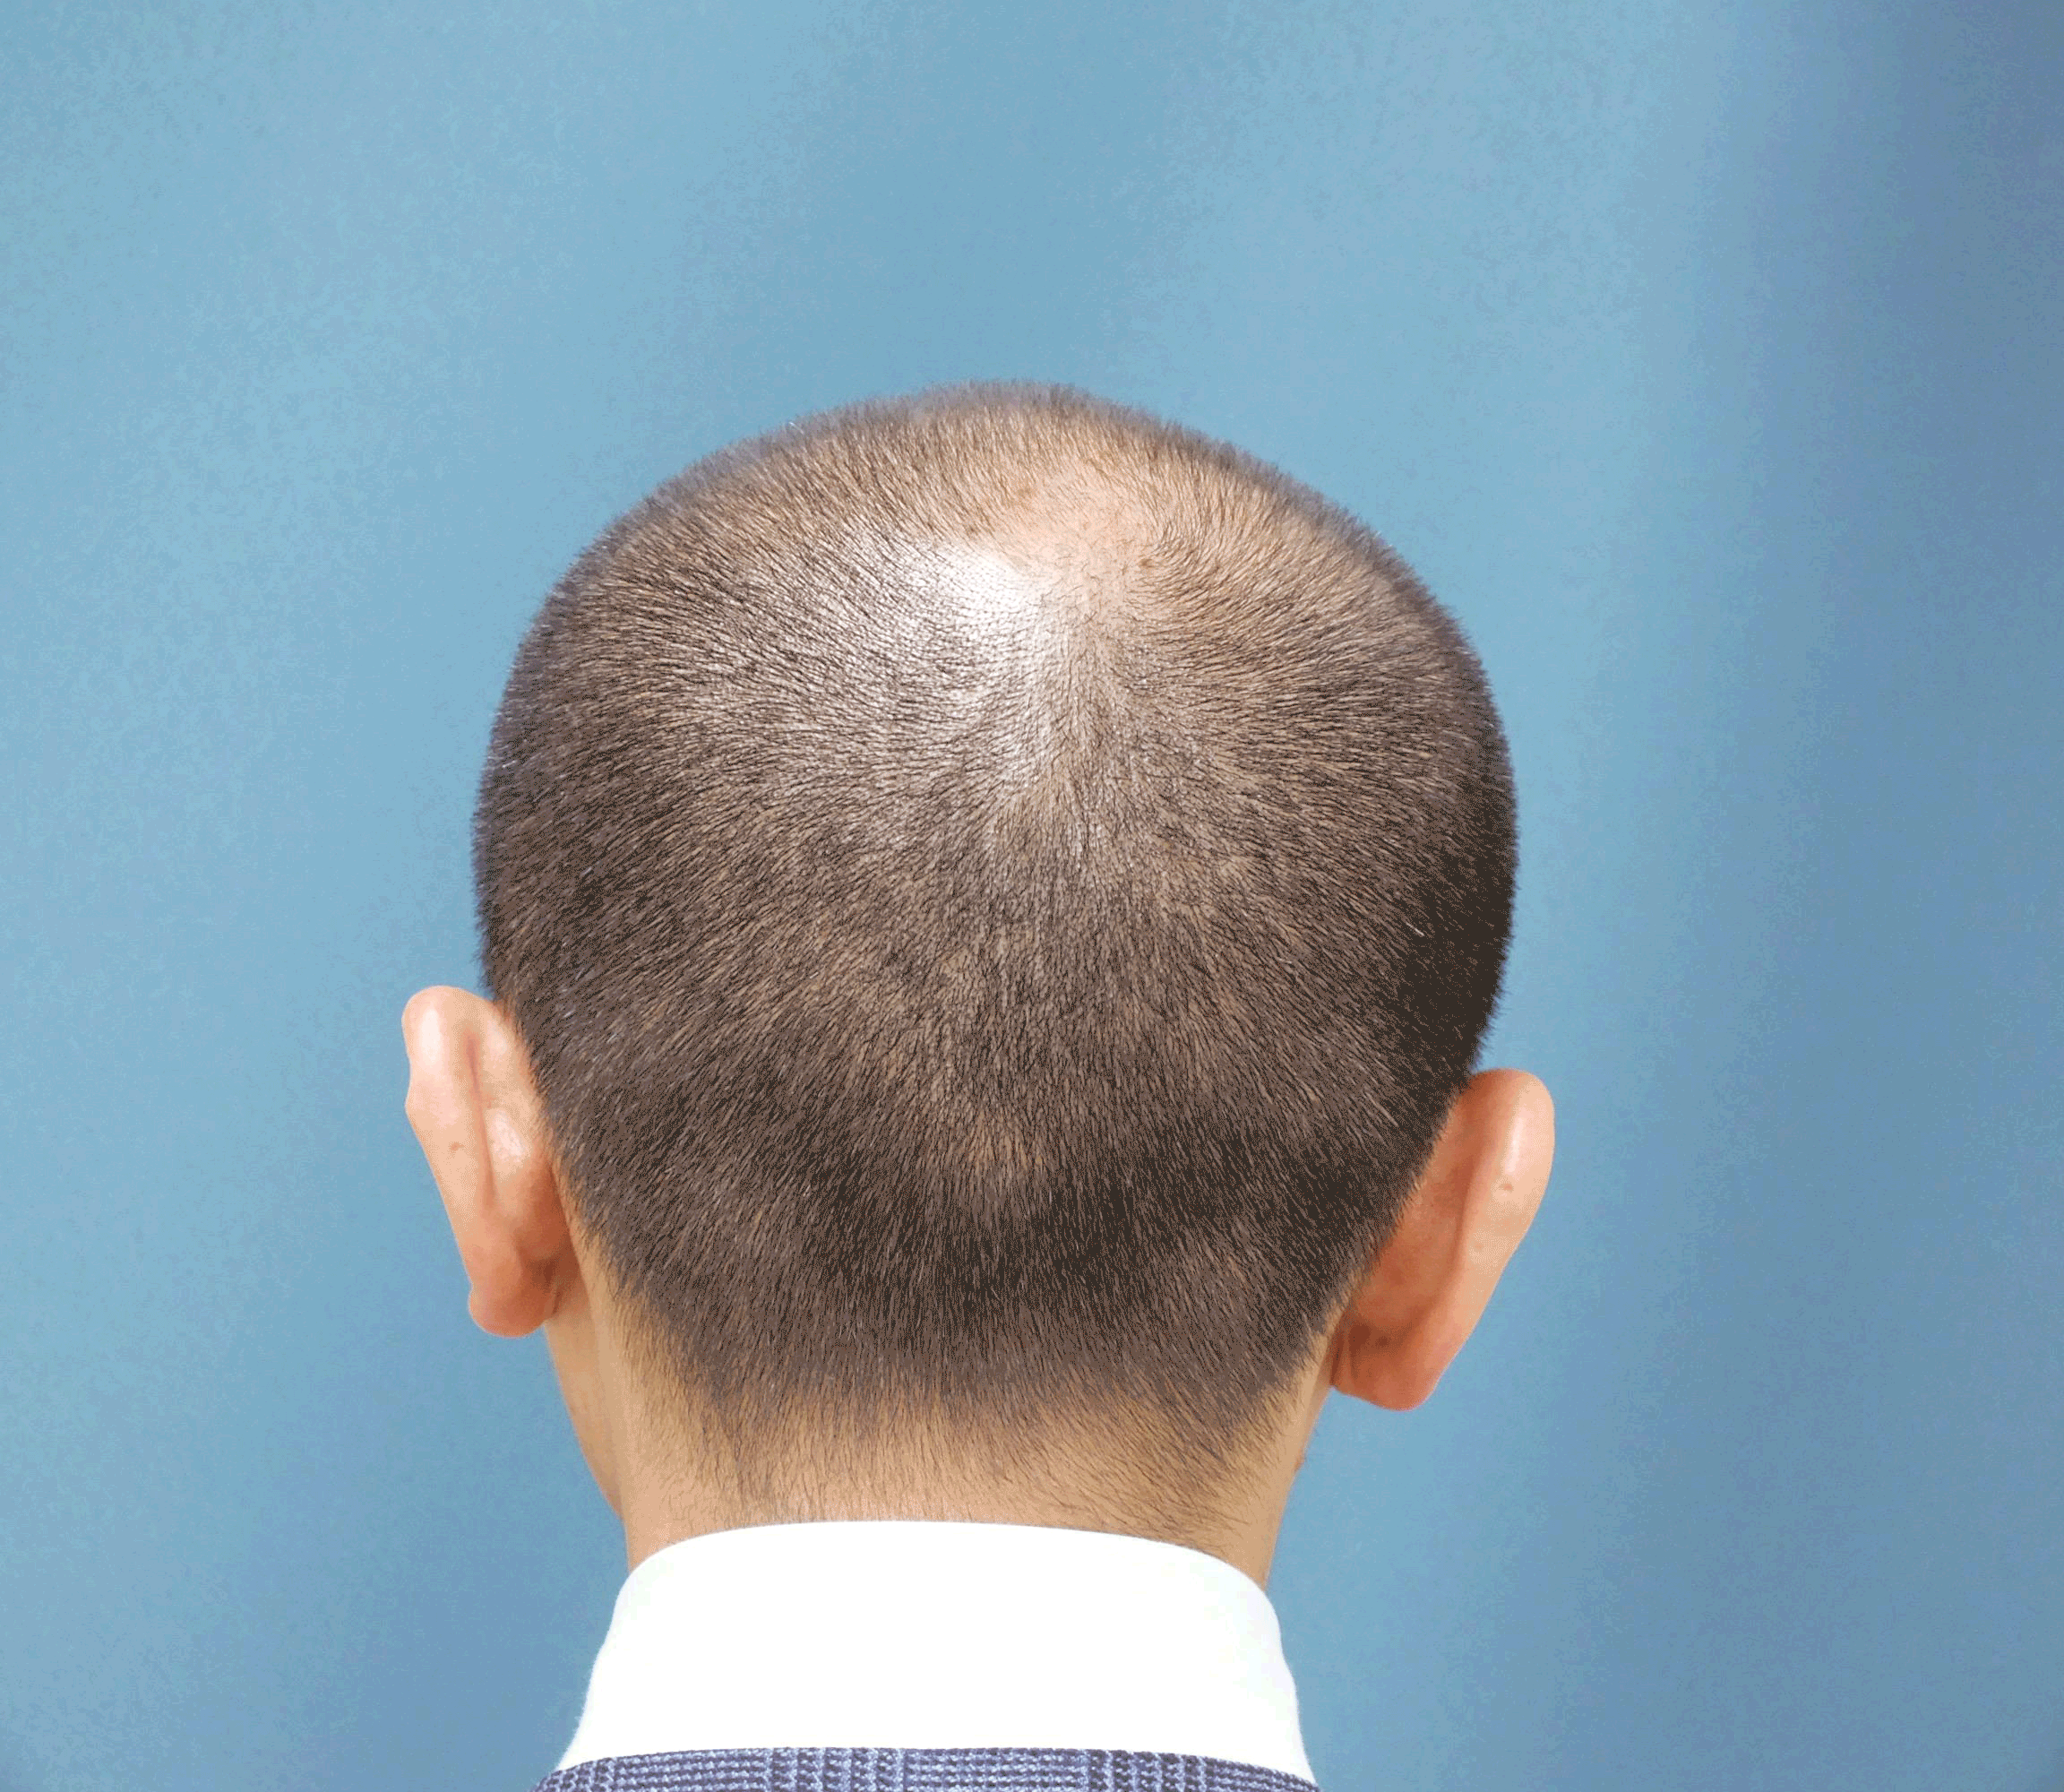 使用前から使用後の頭皮の変化の様子